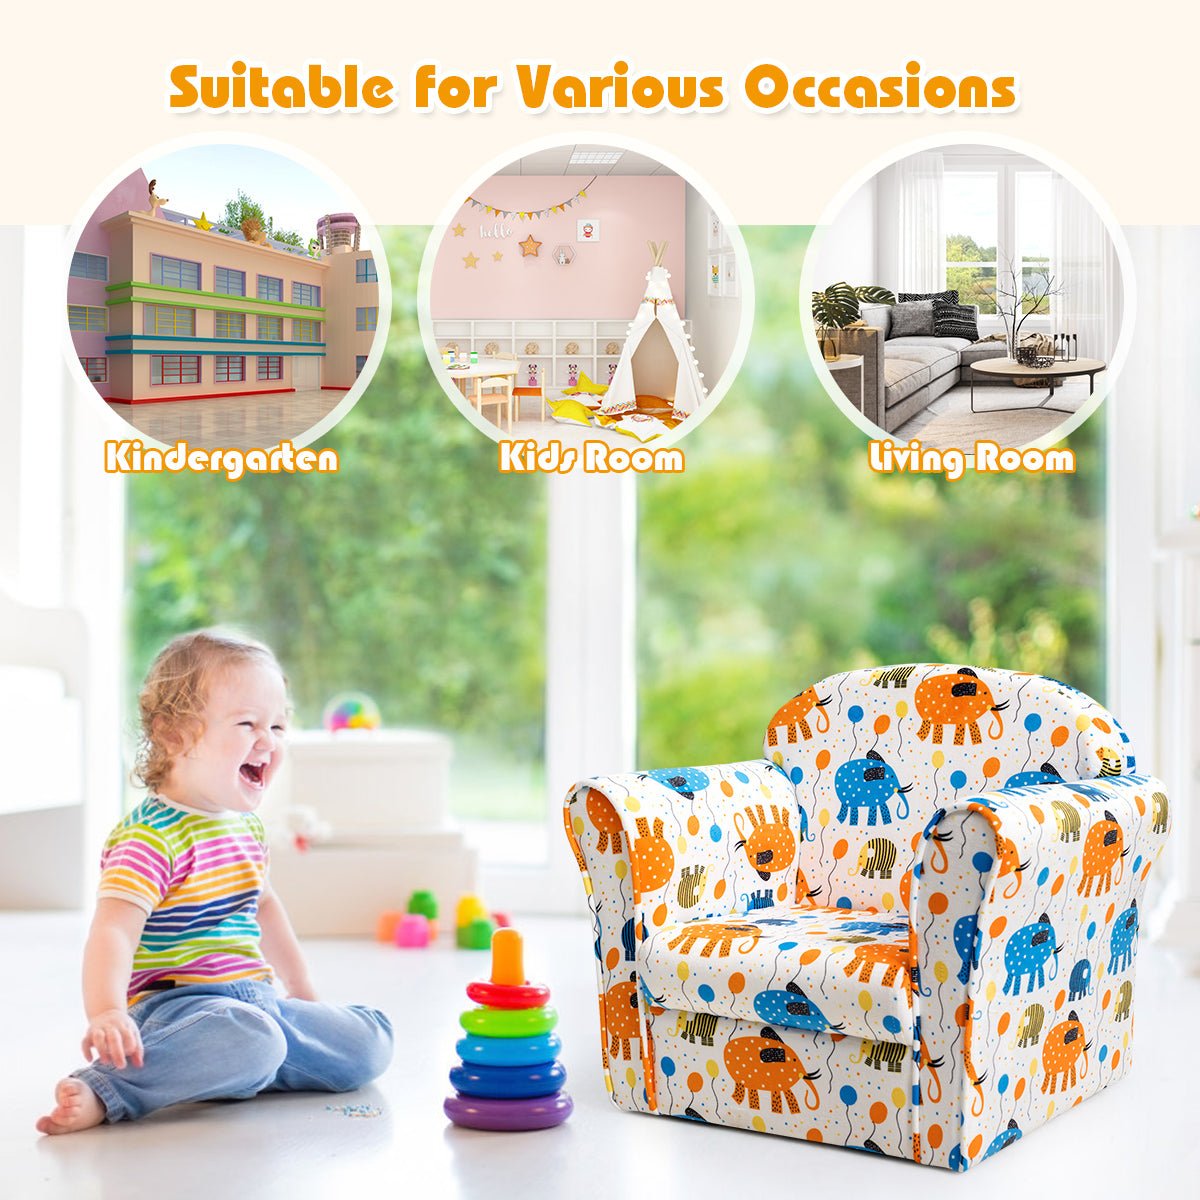 Soft and Stylish: Velvet Kids Sofa in Lovely Pattern for Baby Room